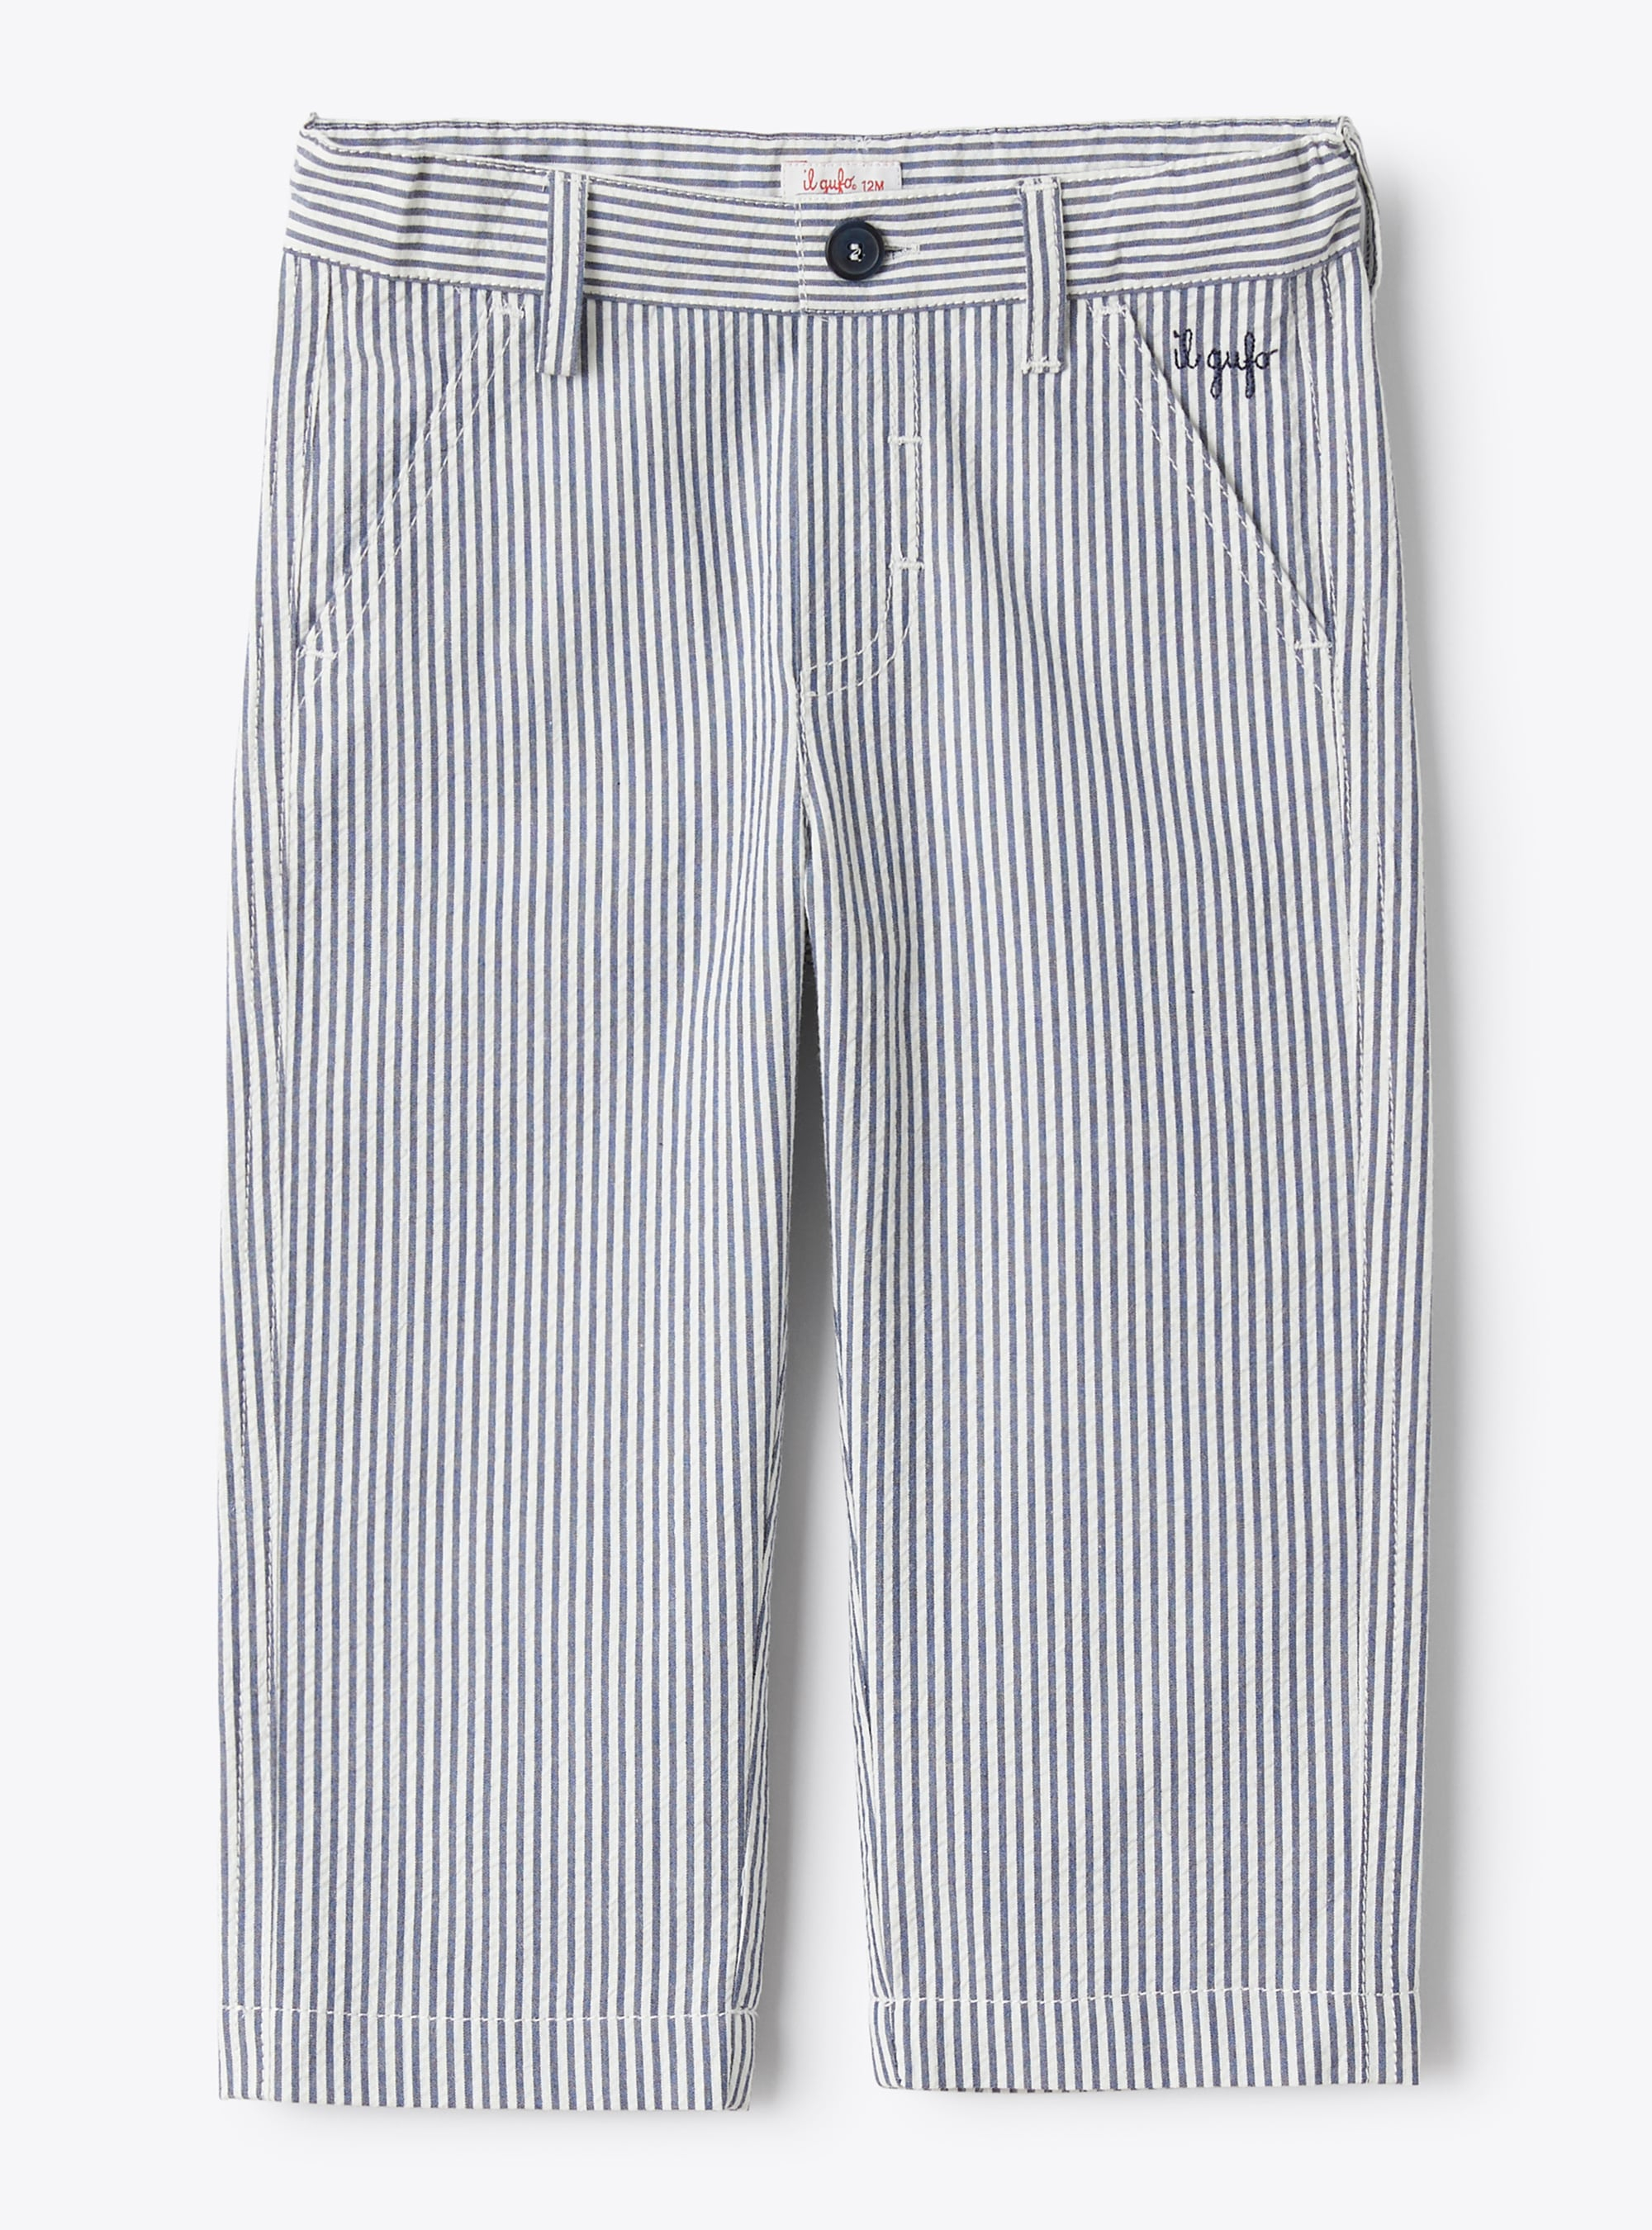 Pantalone da neonato in seersucker a righe blu e bianche - Pantaloni - Il Gufo